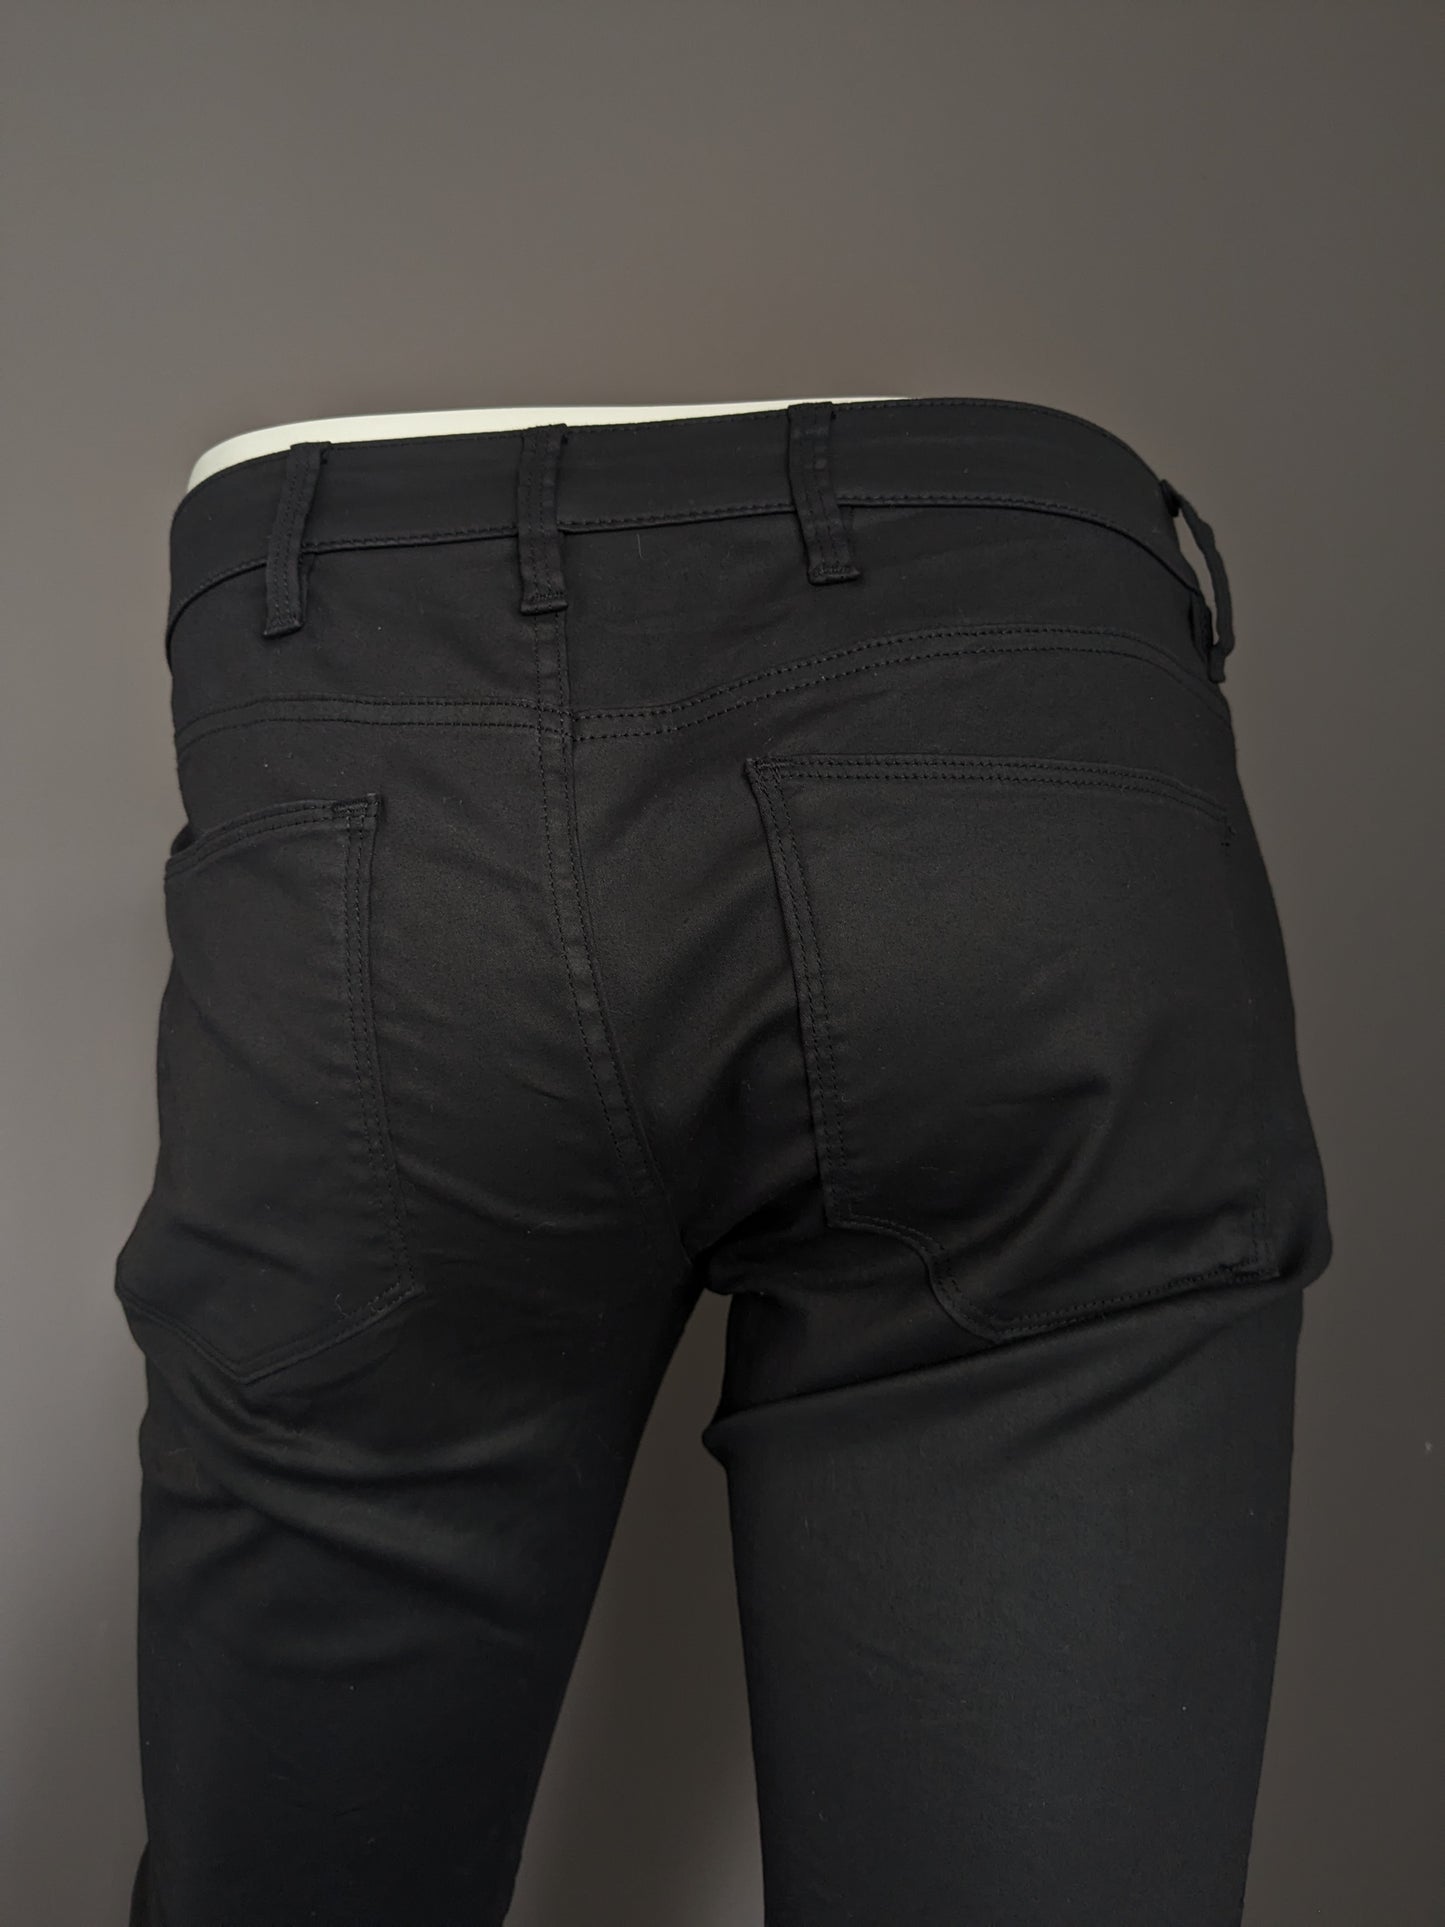 Jeans bruts G-Star. Revêtement noir. Type 5620 Custom. Taille W29 - L32. Extensible.